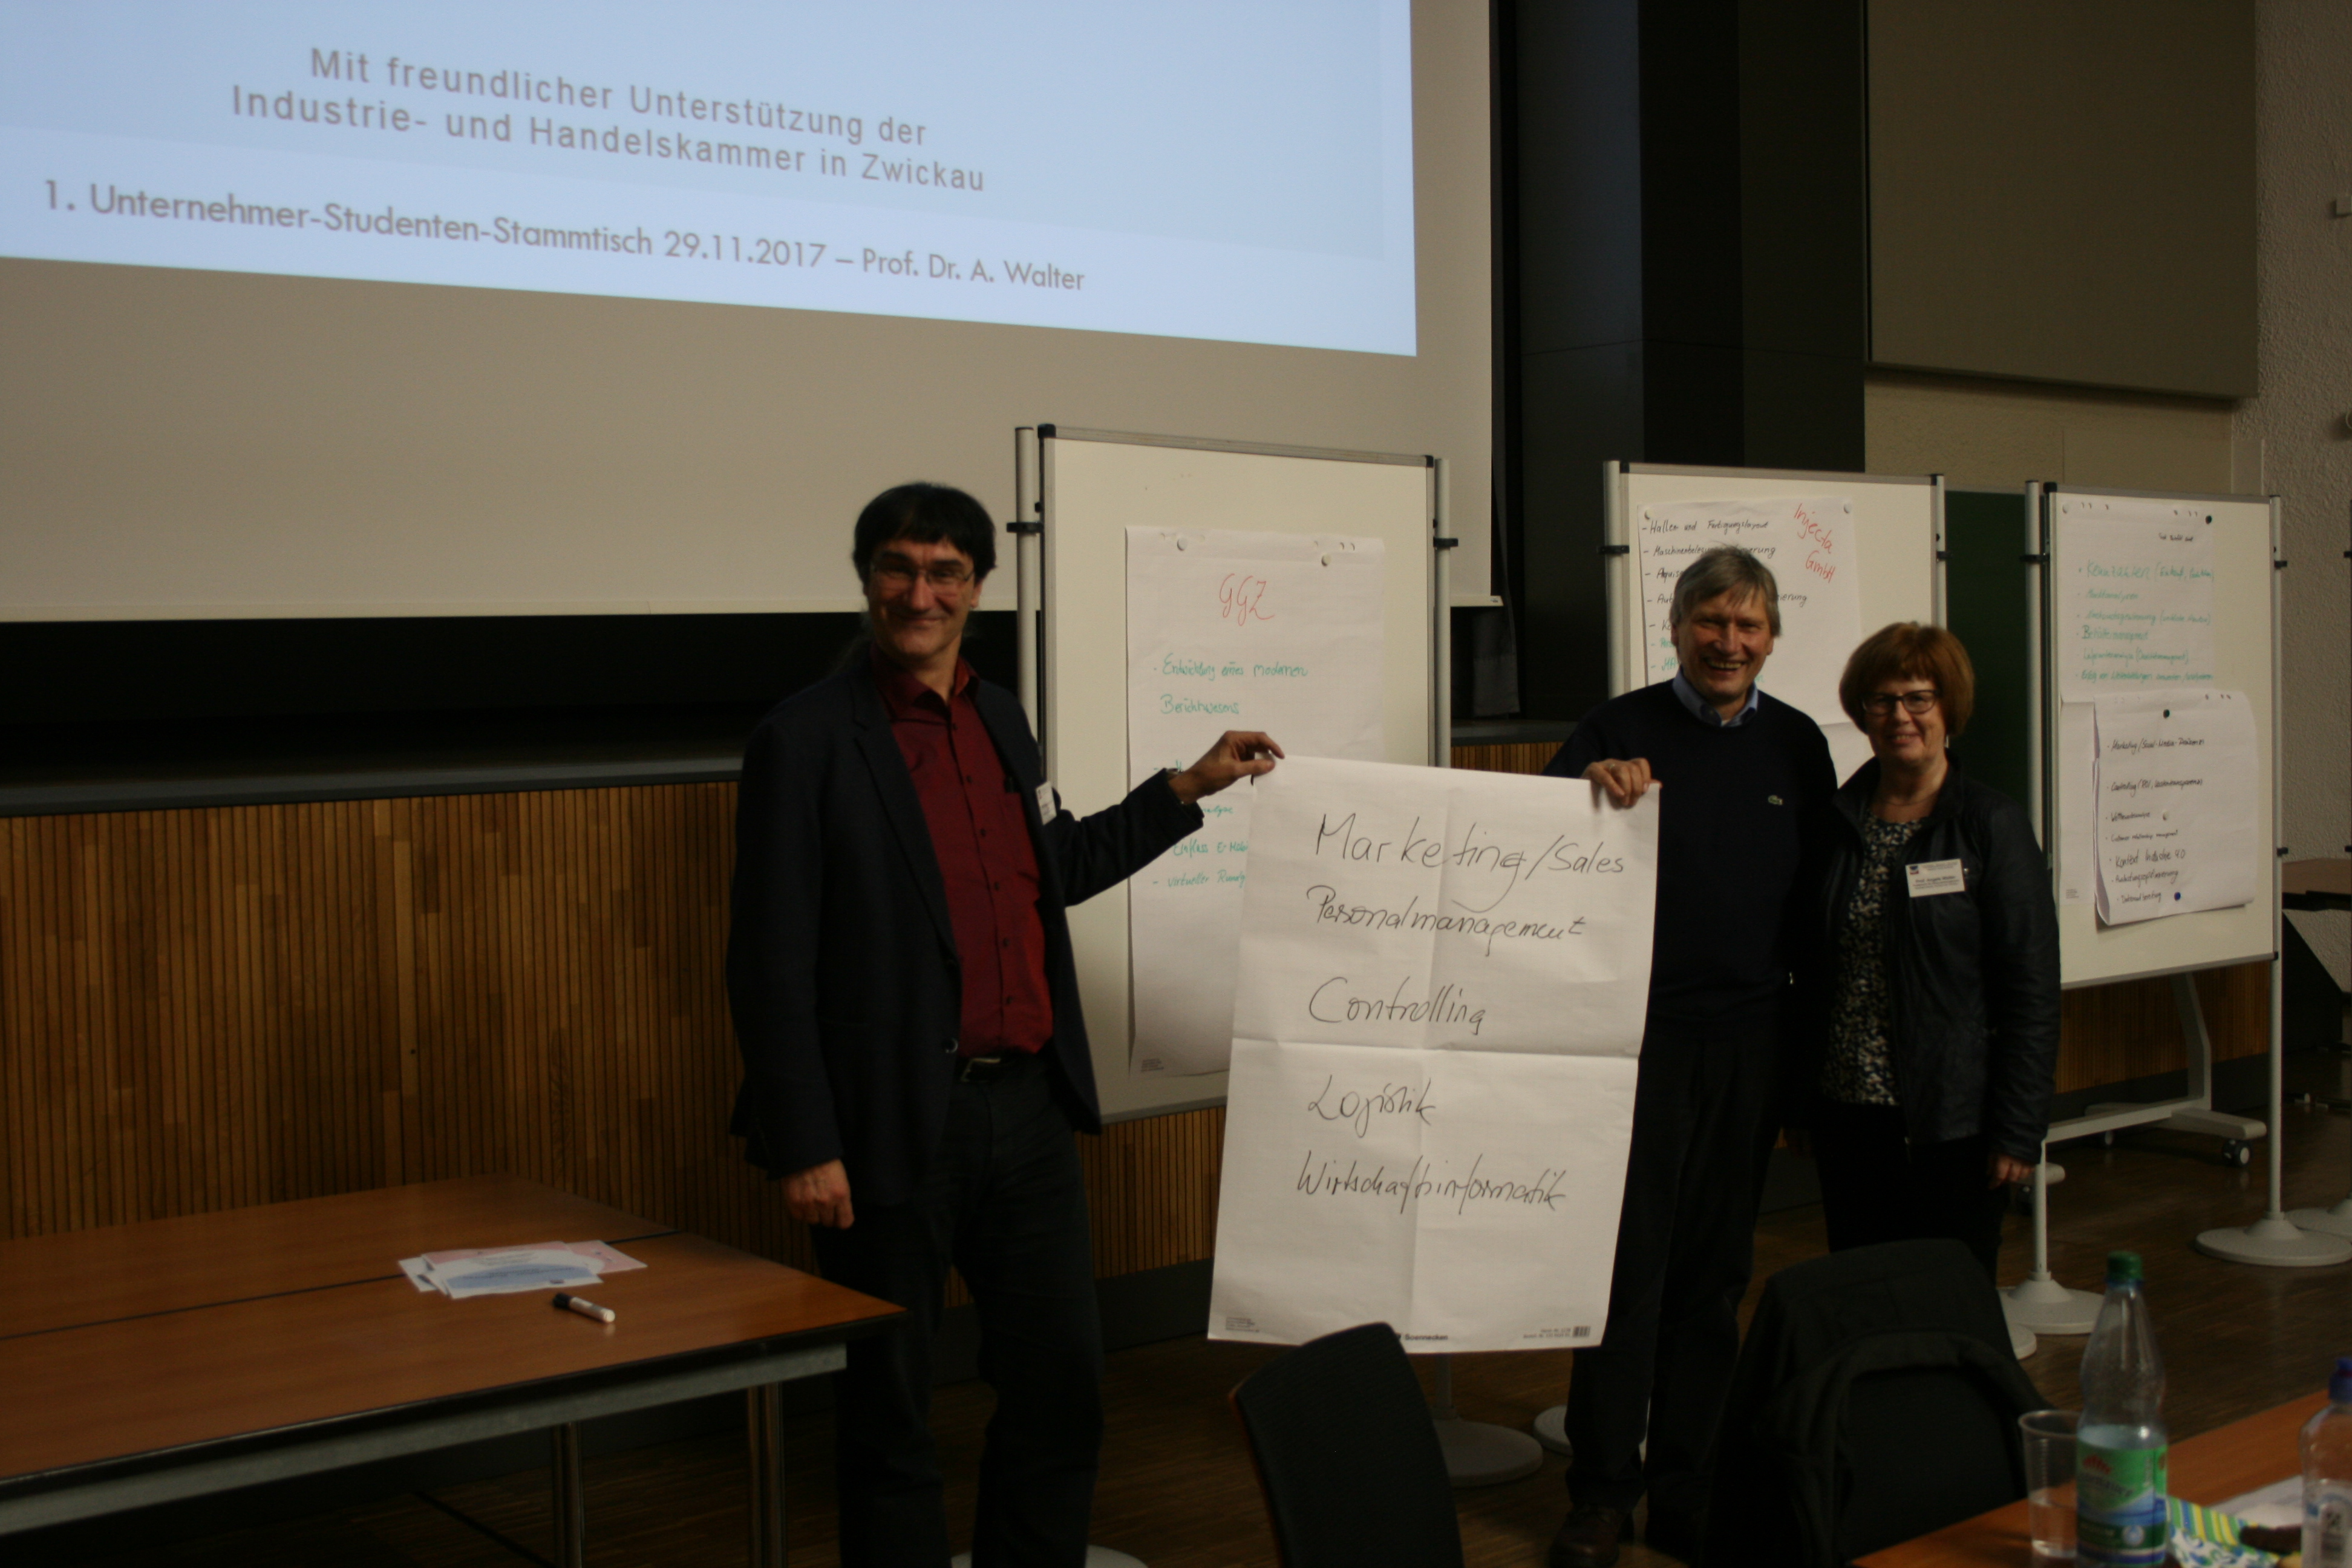 Foto: 1. Unternehmer-Studenten-Stammtisch. Drei Professoren stehen vor einer Reihe Flipcharts und halten ein beschriftetes Plakat in die Kamera.